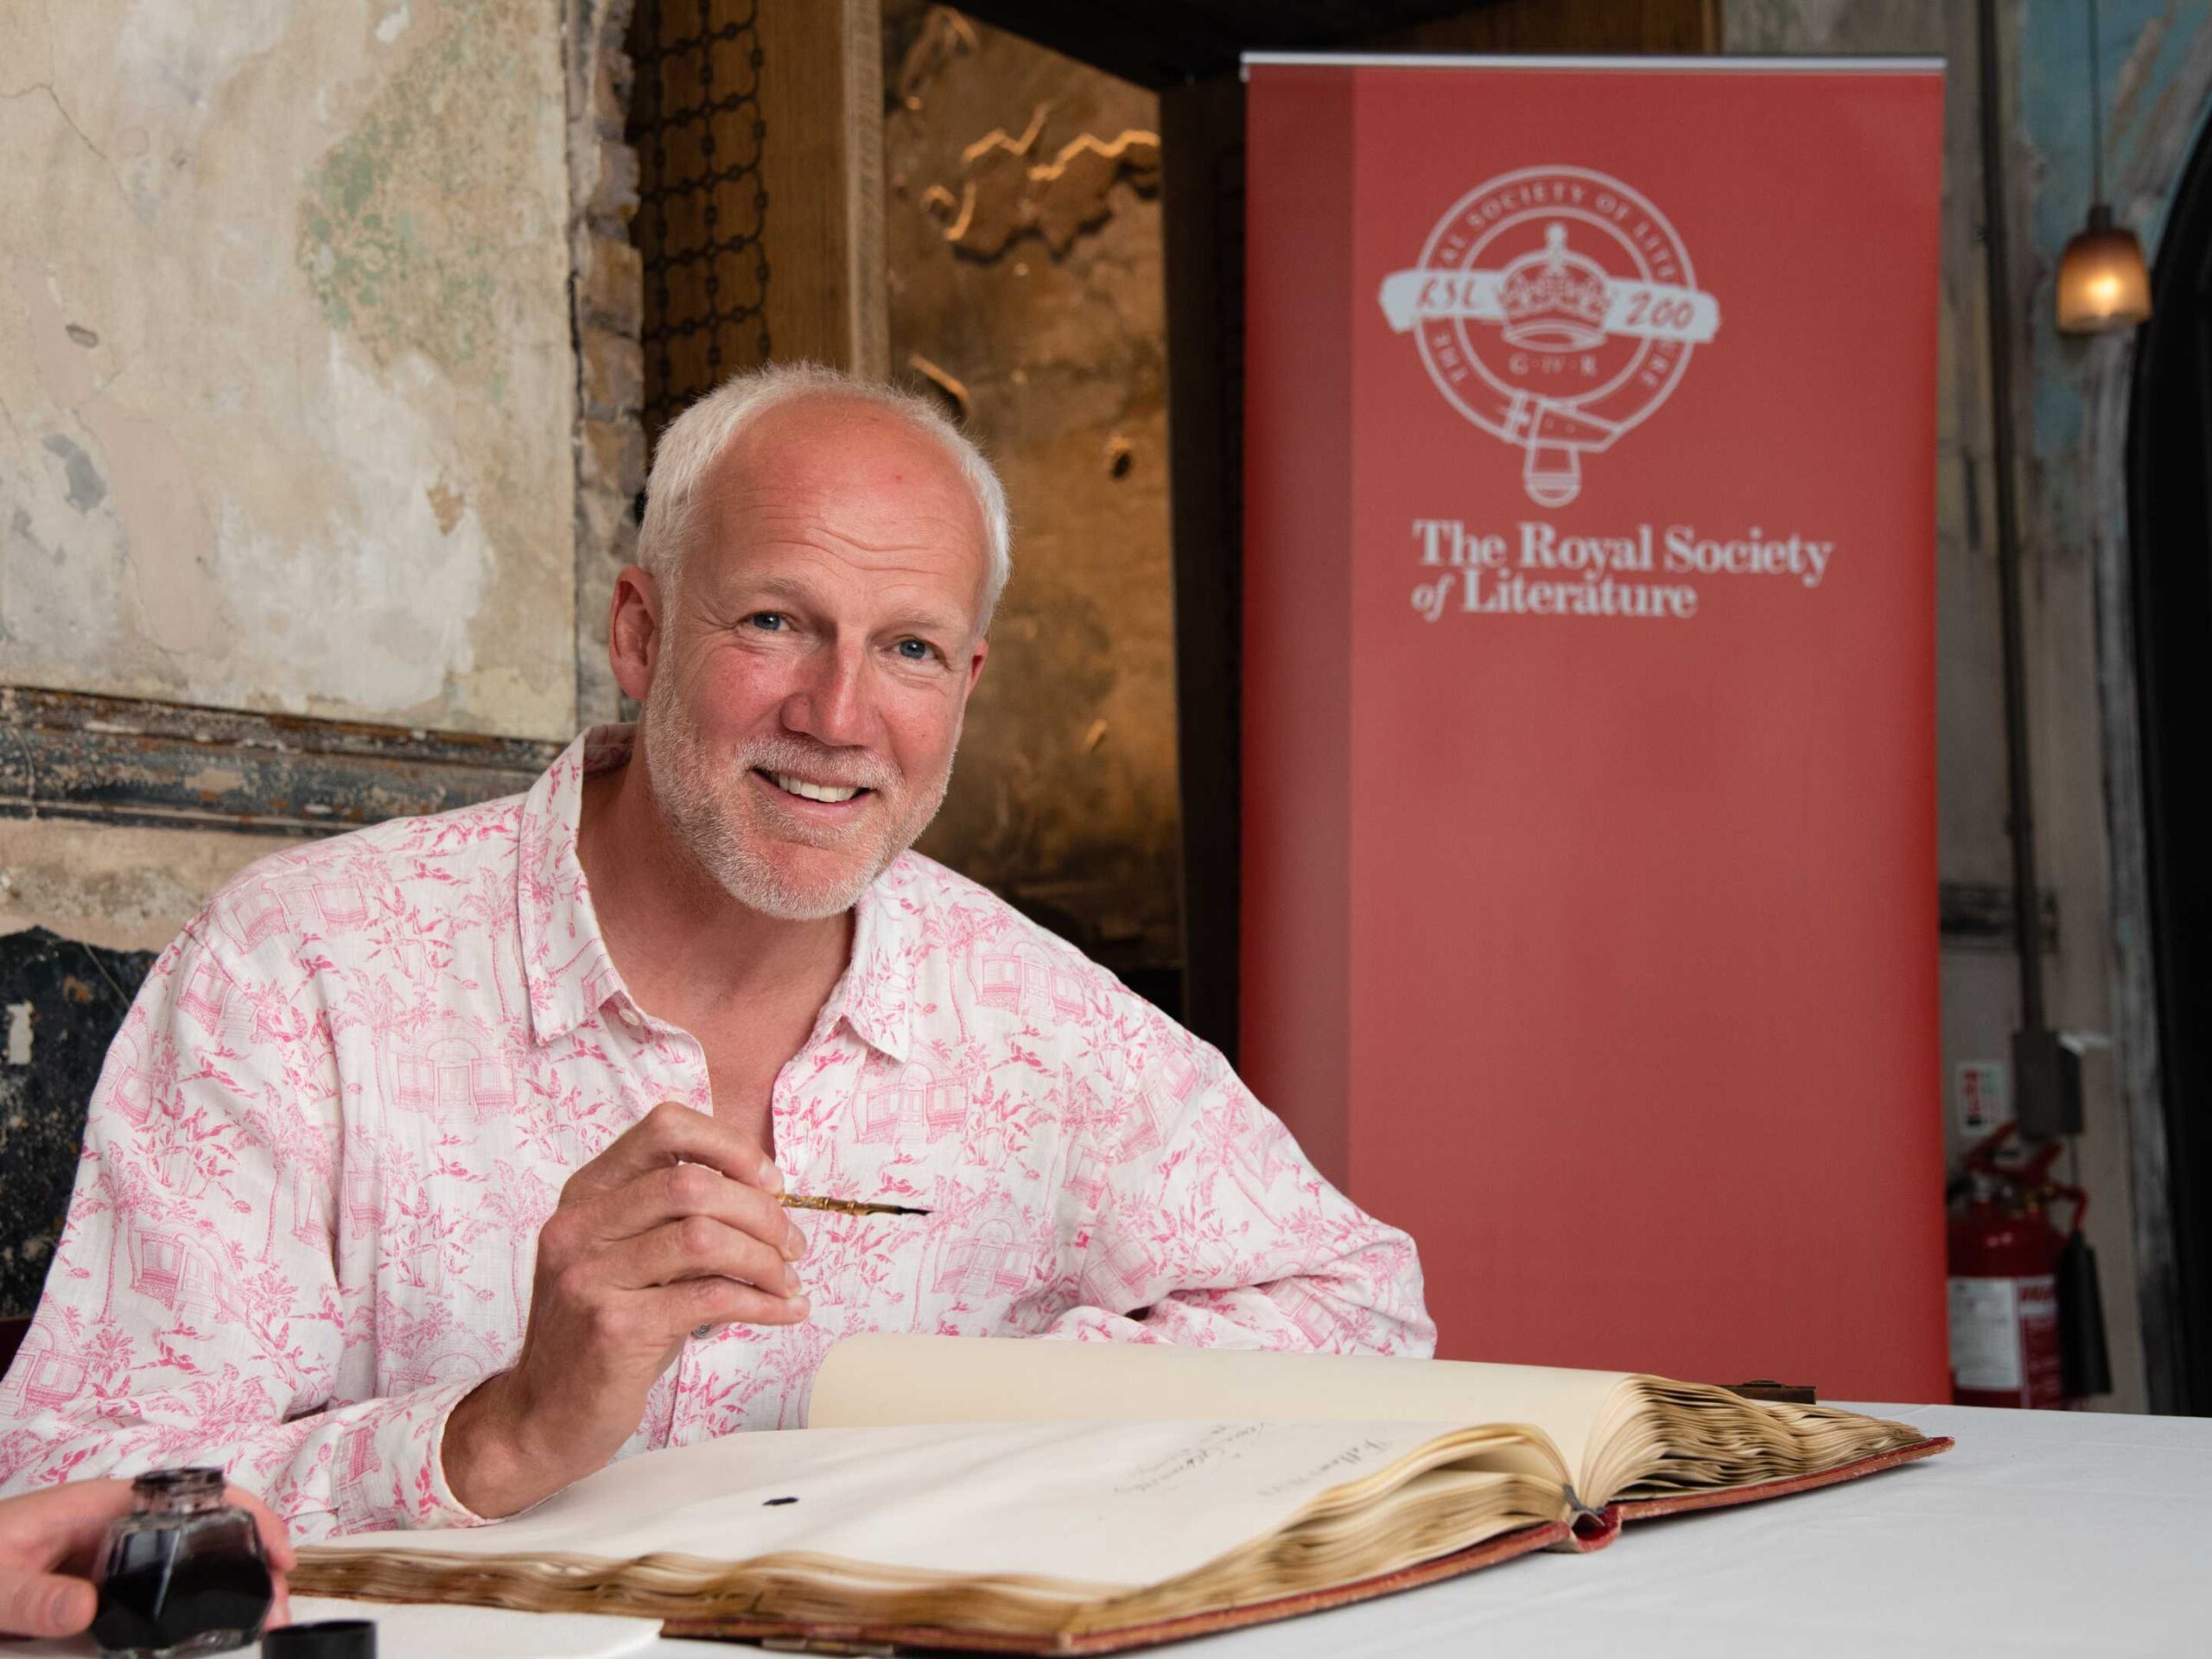 Justin Marozzi signing ledger at The Royal Society of Literature